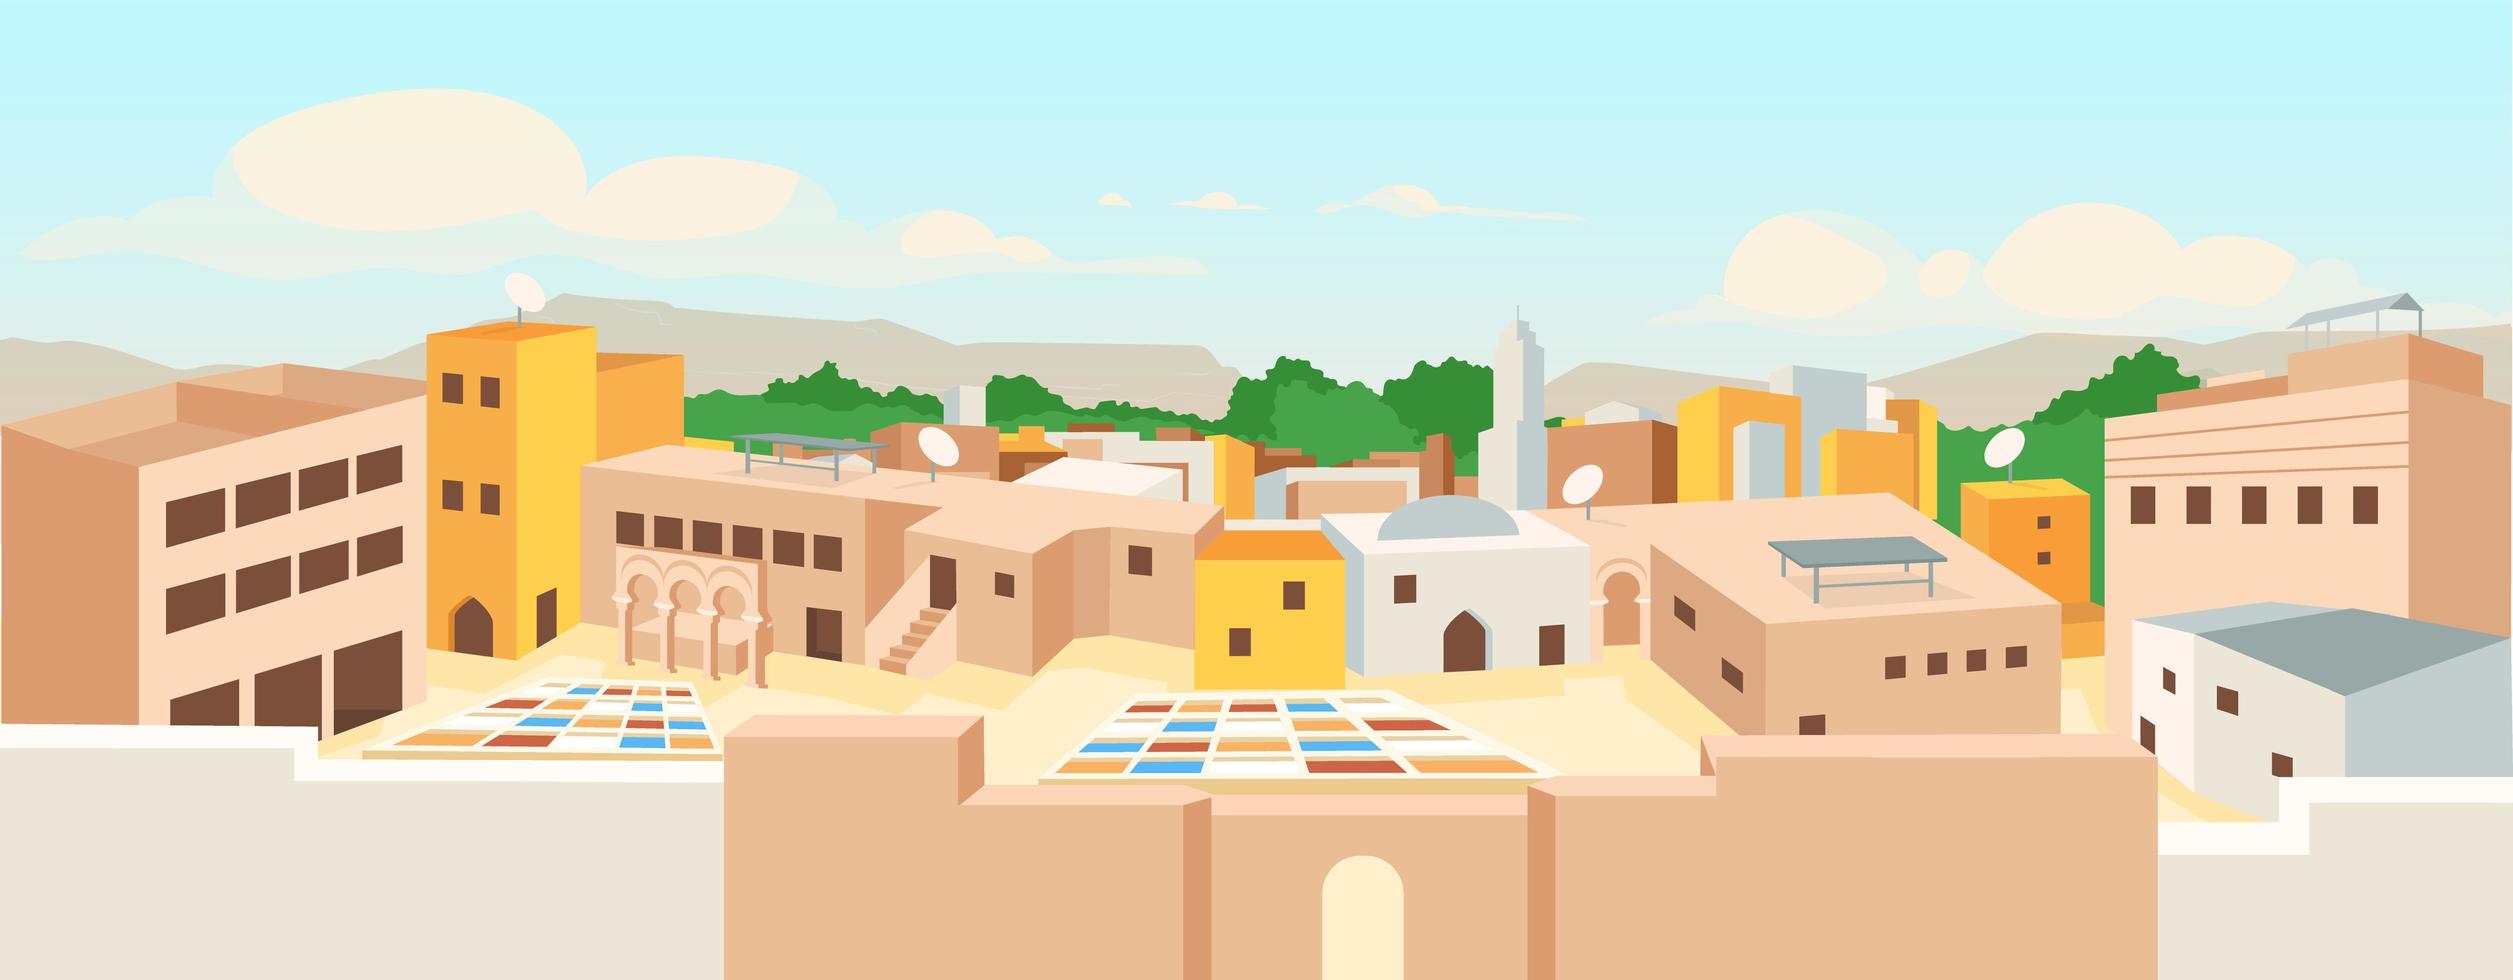 ancienne illustration vectorielle de ville arabe plat couleur vecteur